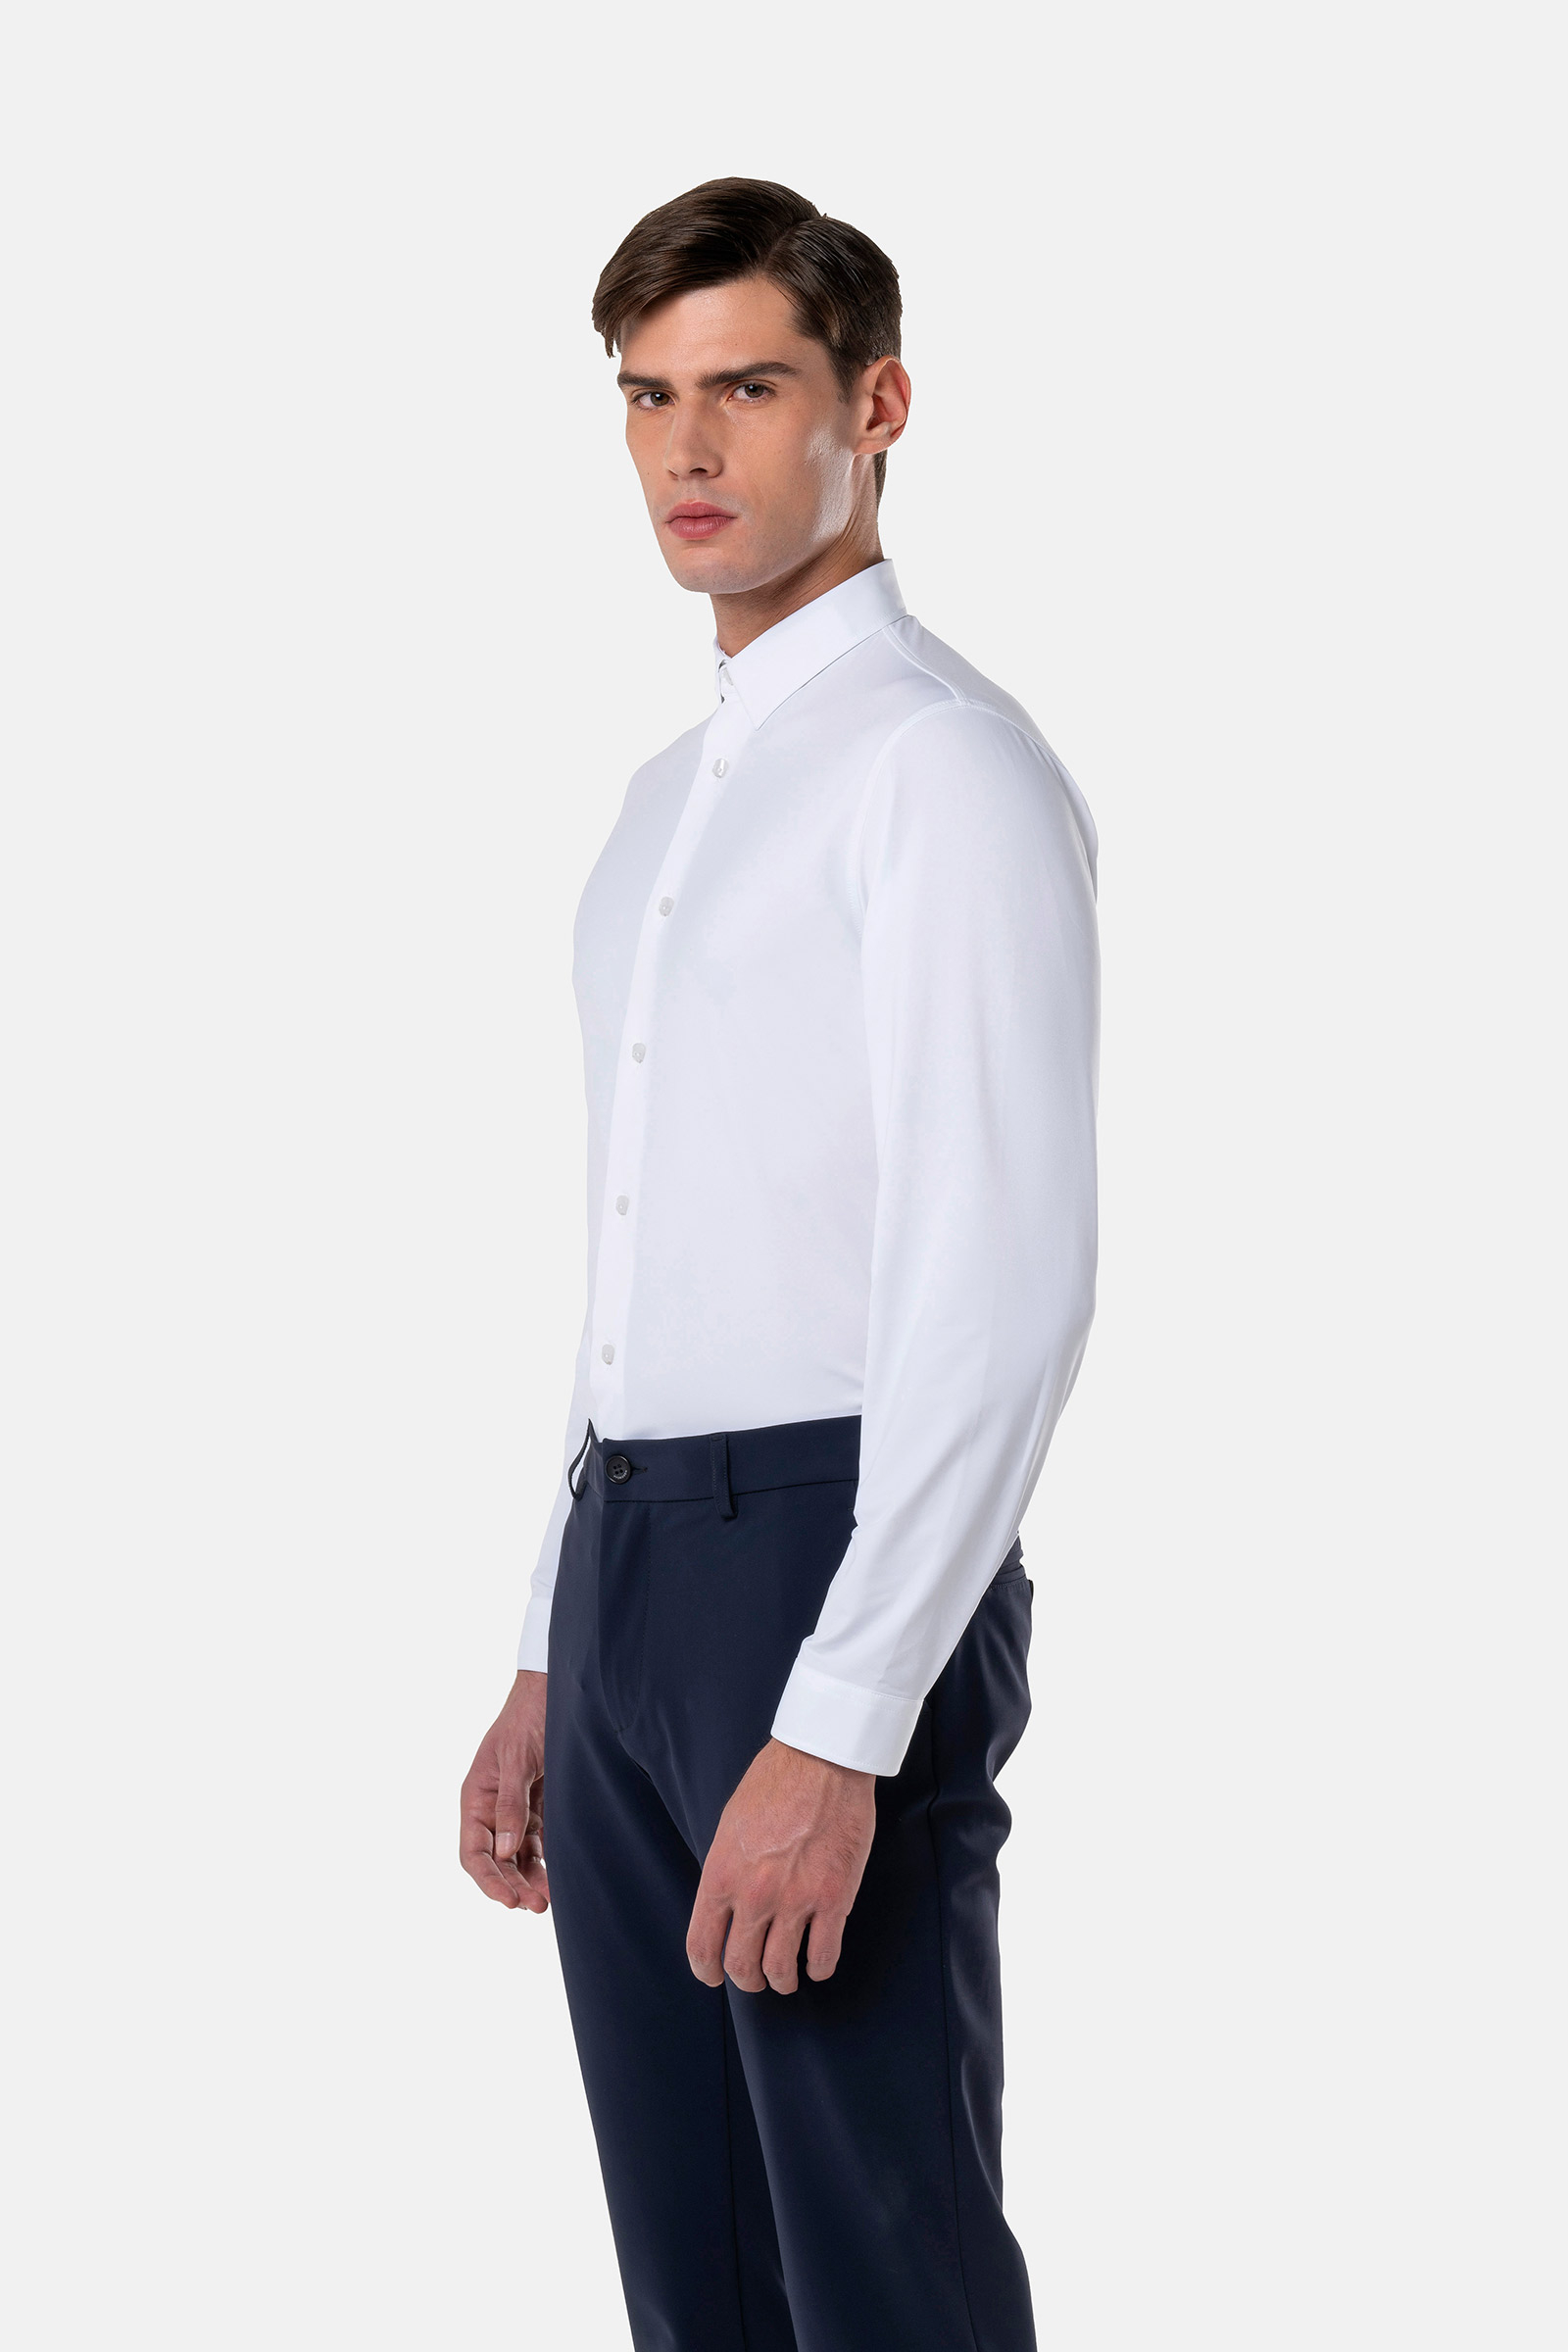 TECH SHIRT - WHITE OXFORD - Hydrogen - Luxury Sportwear